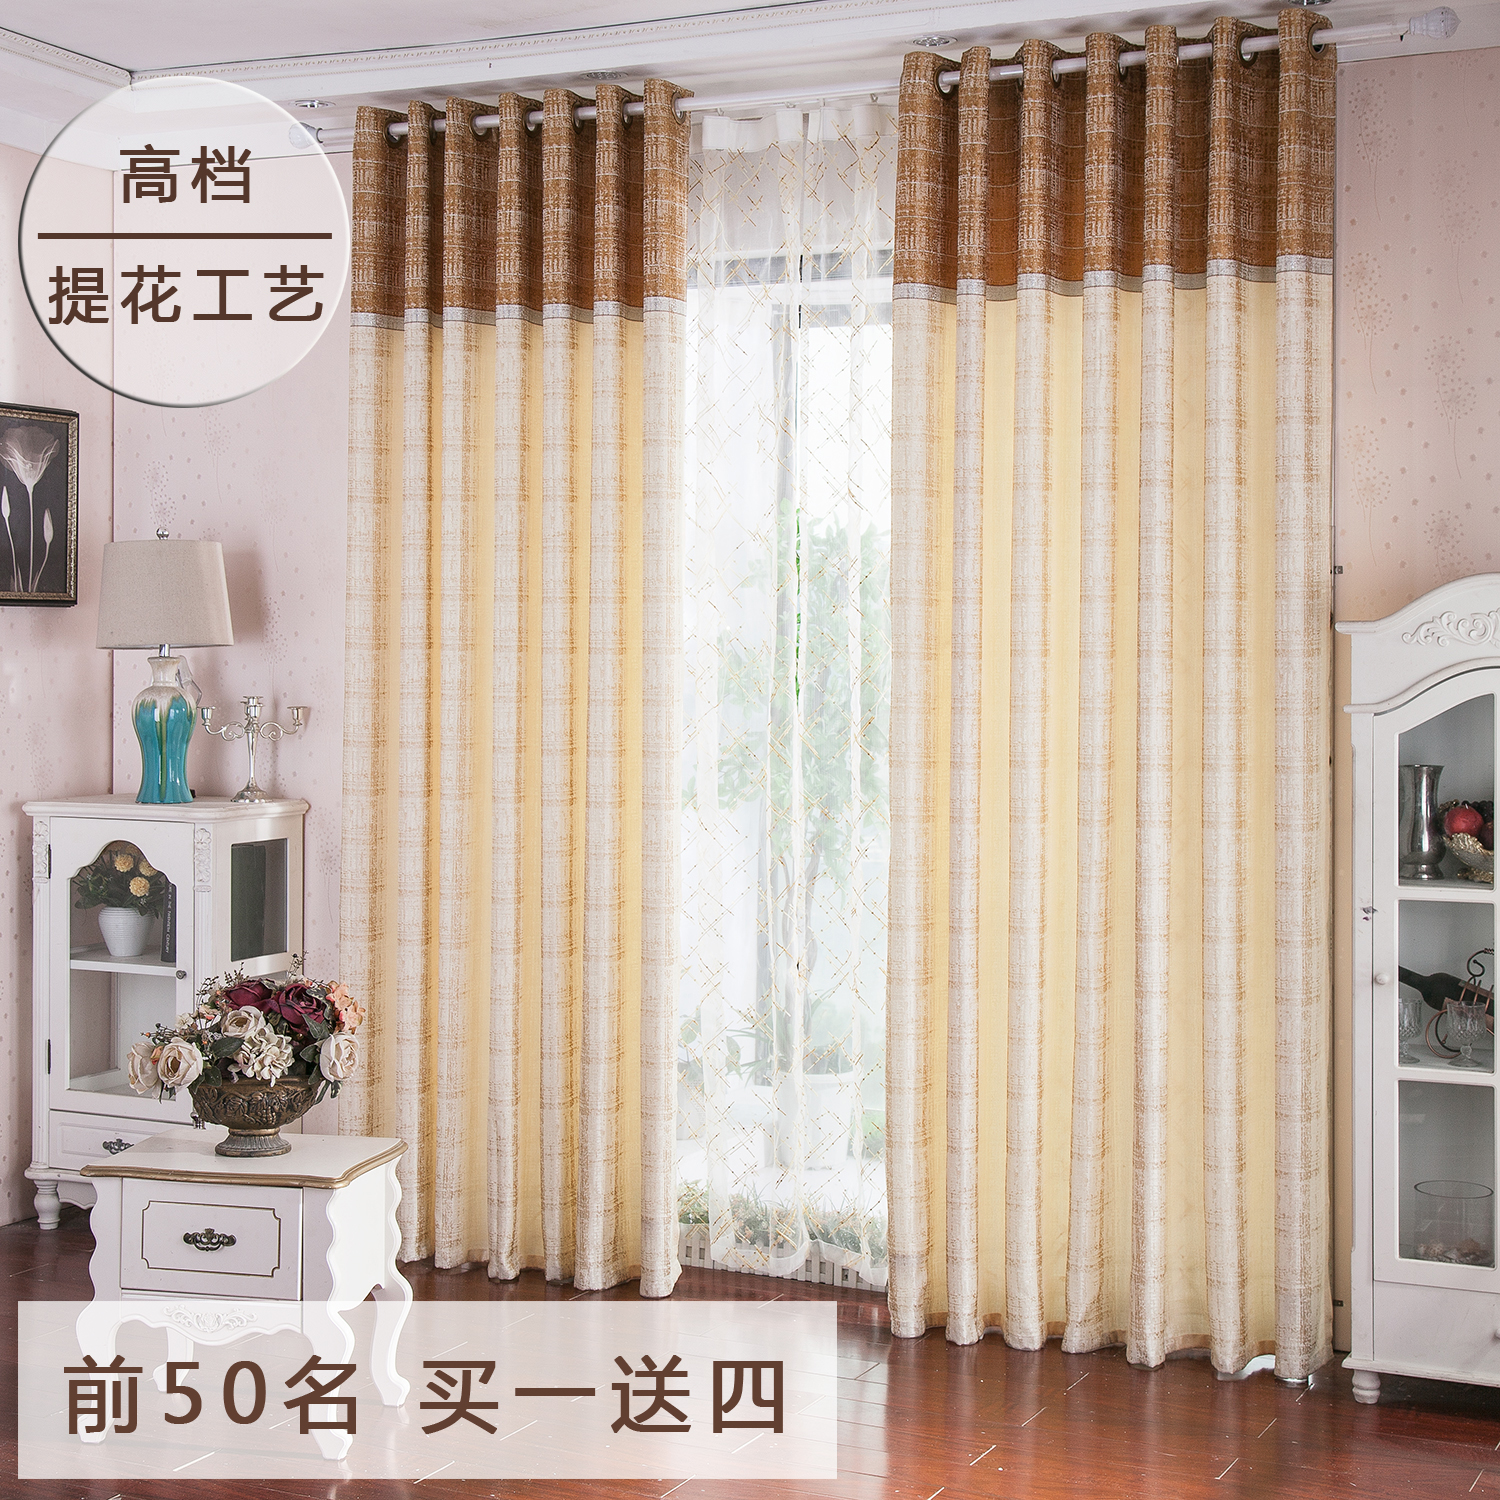 新品简约大气客厅卧室咖啡灰色工程定制提花窗帘成品特价窗纱布料